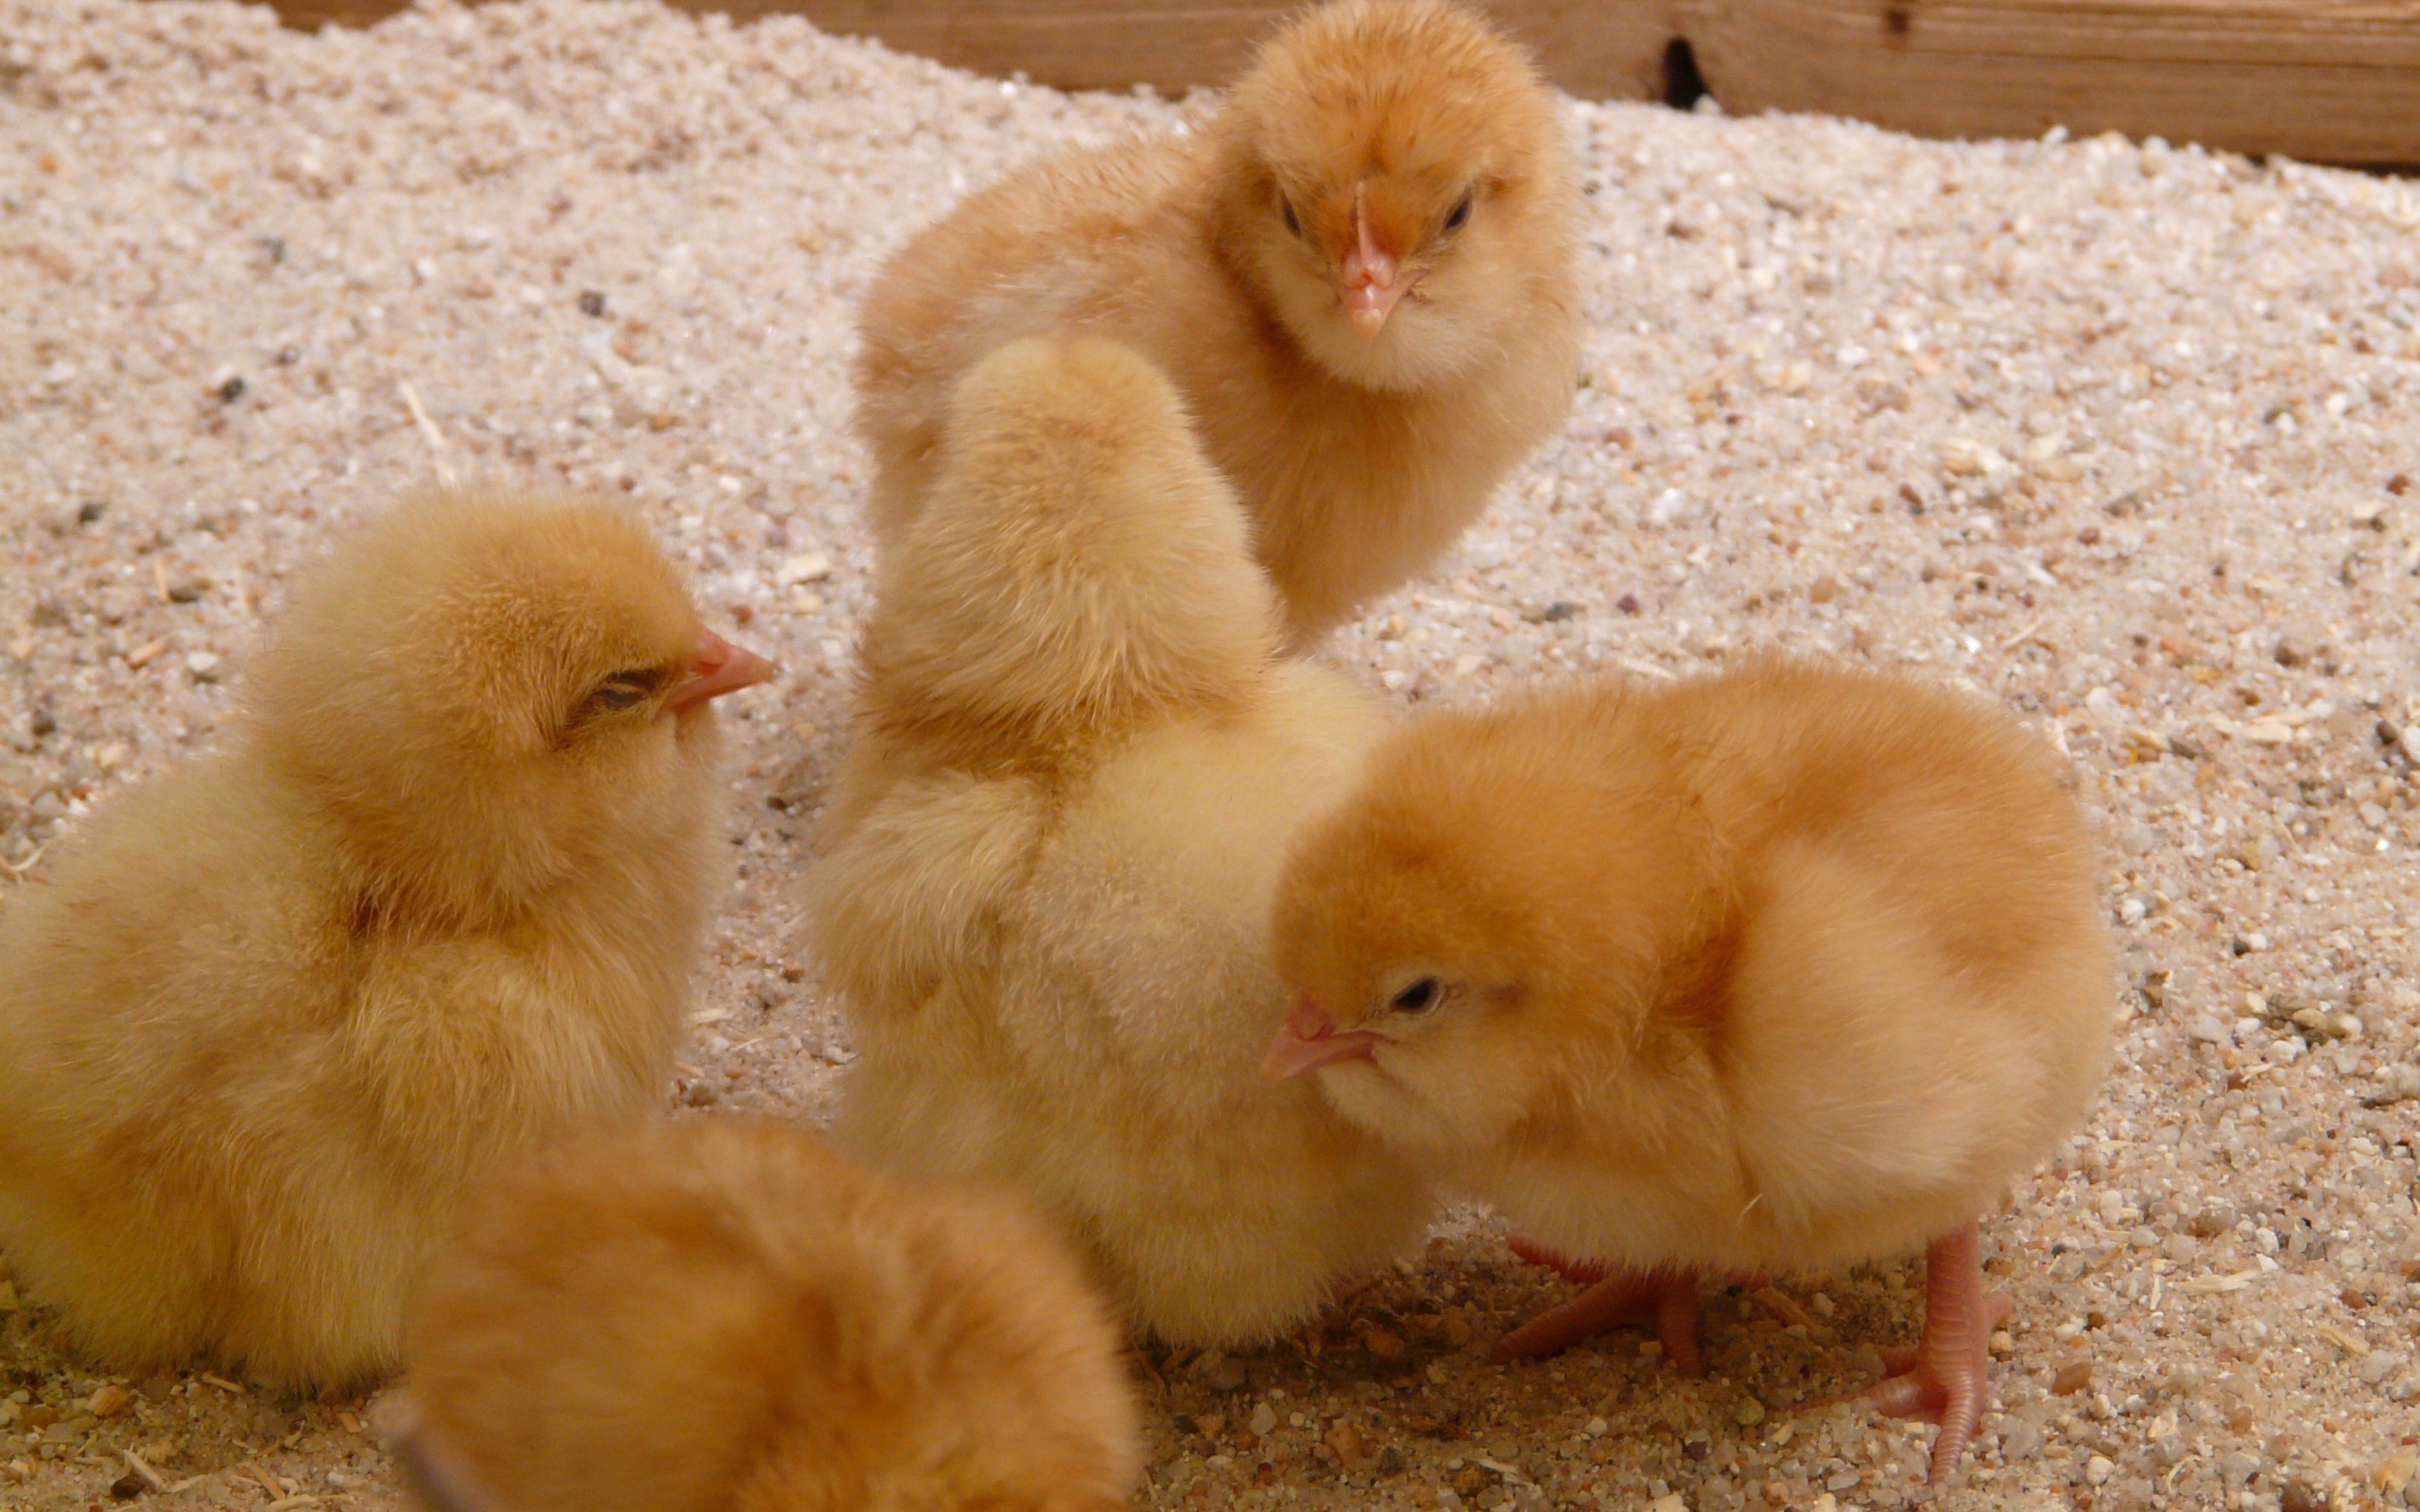 Little yellow hen chicks